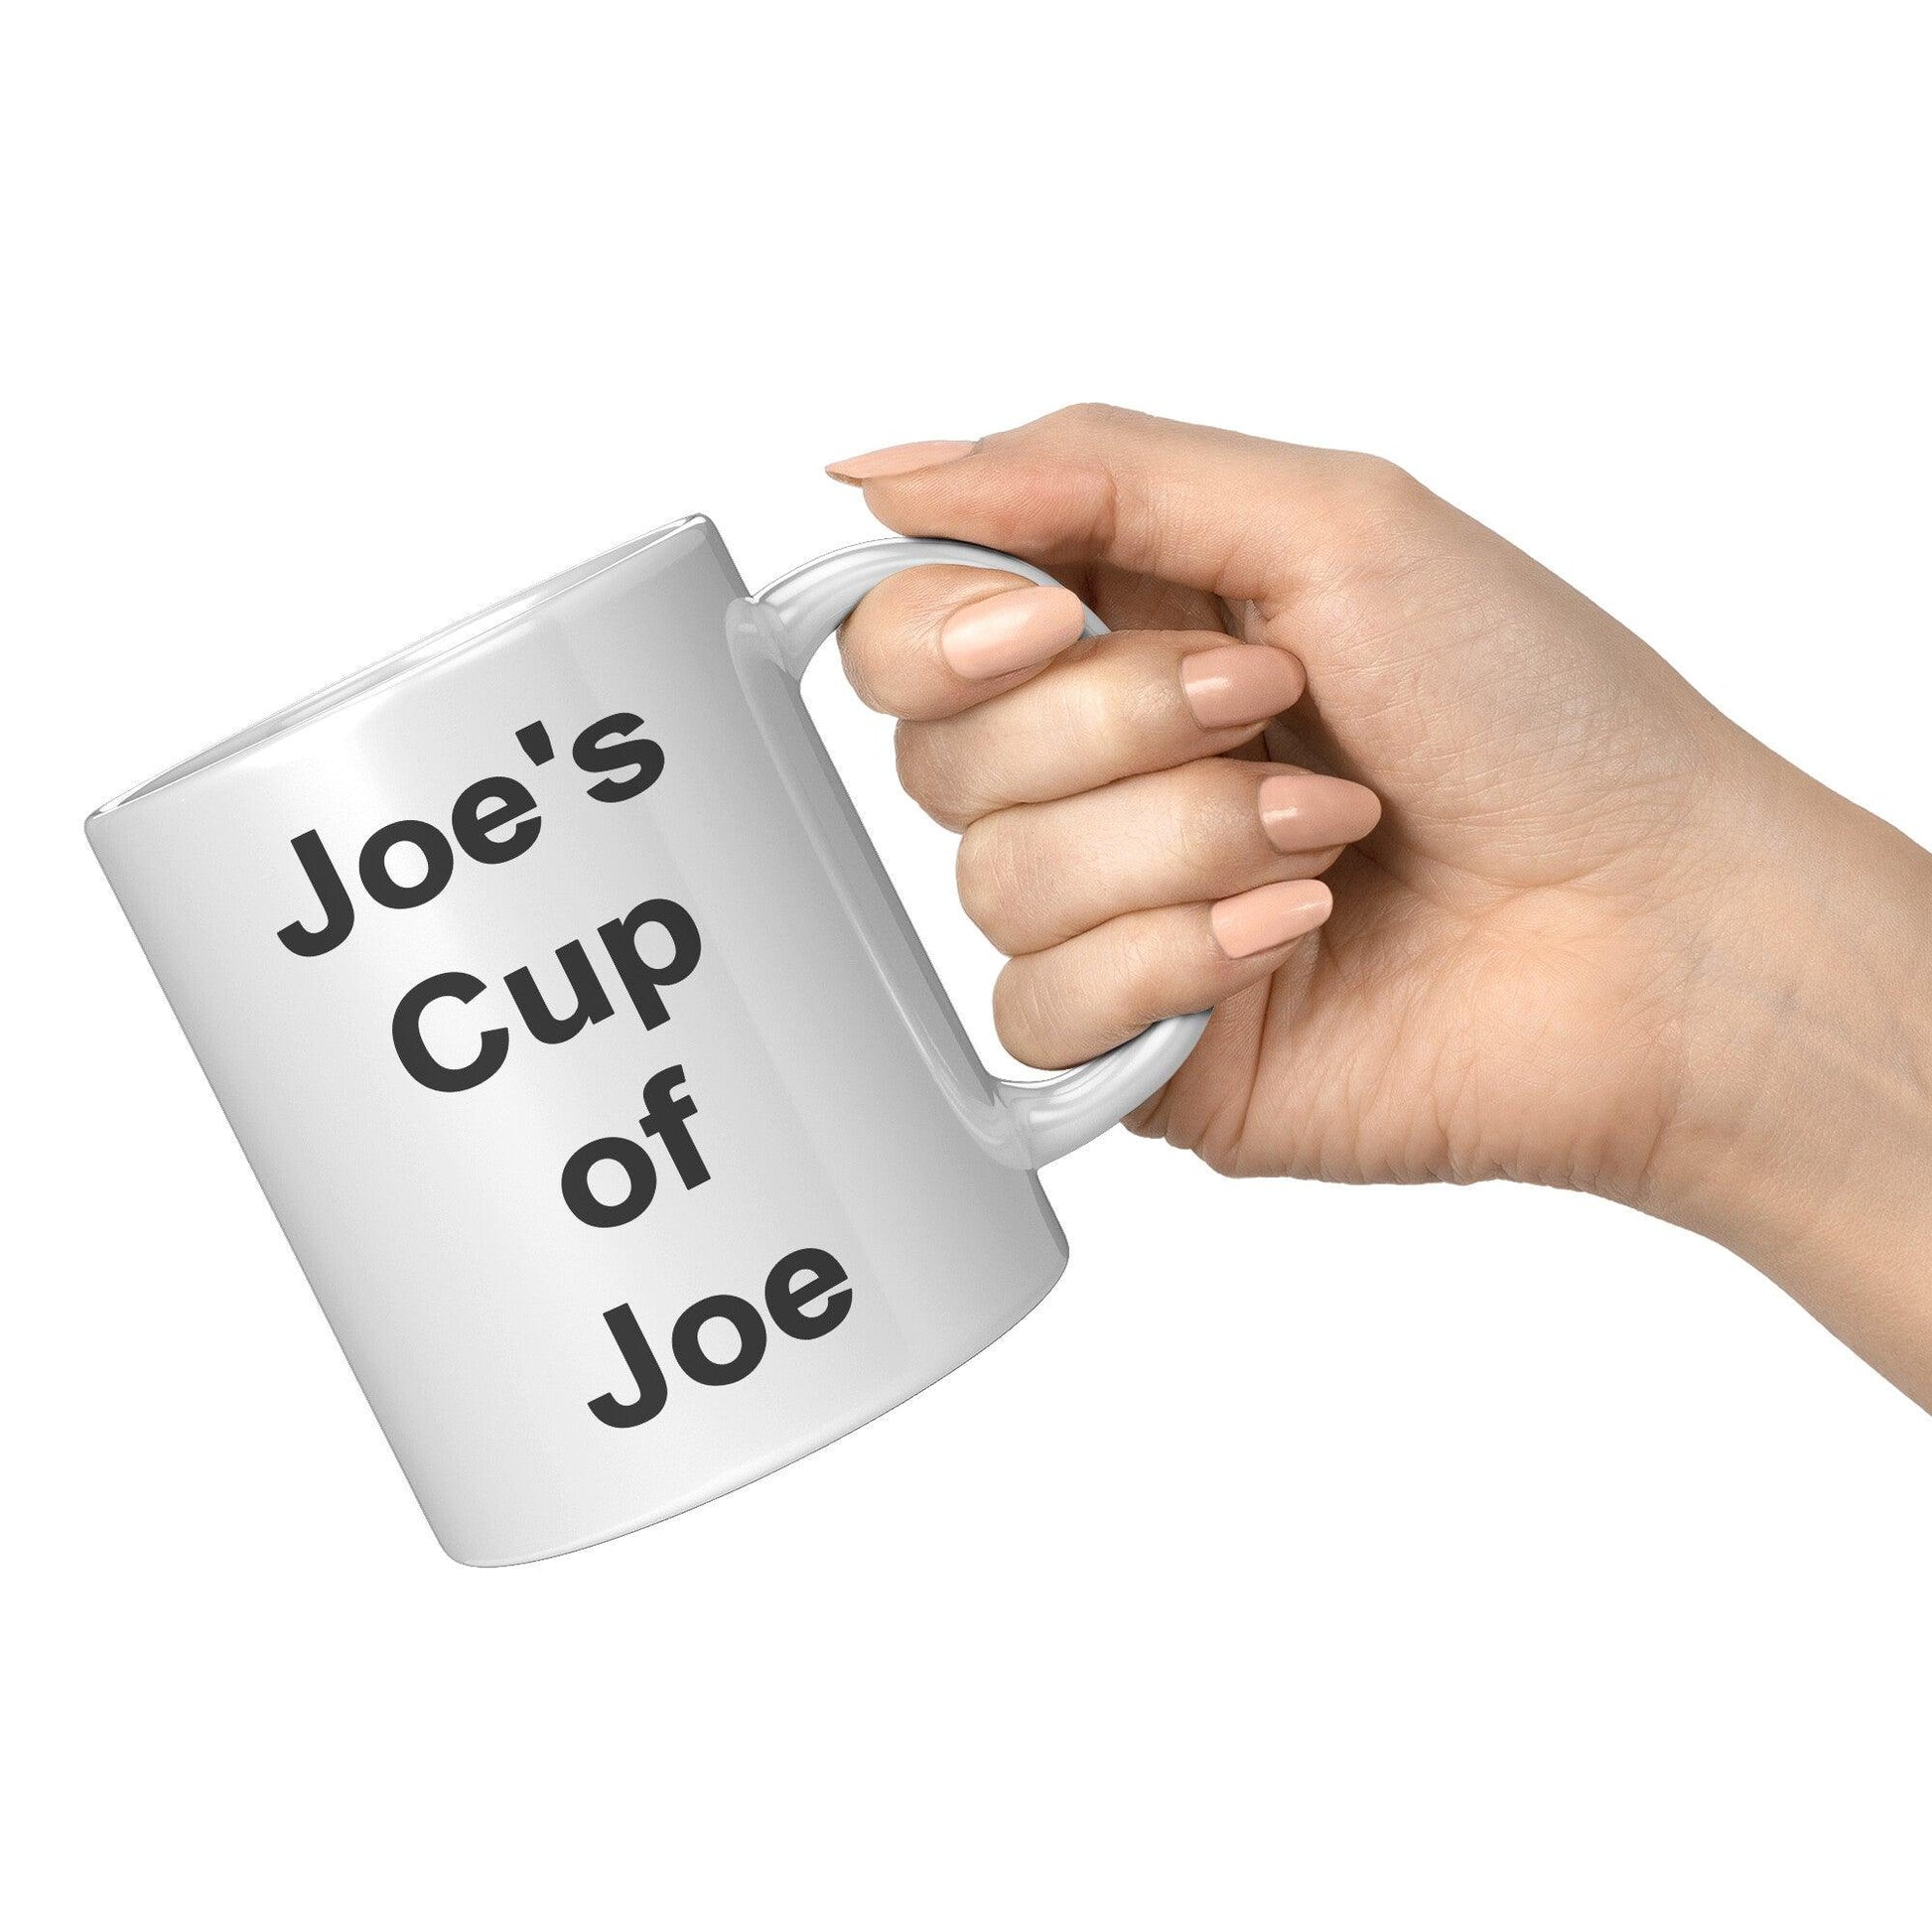 Joe's Cup Of Joe White Mug - TheGivenGet